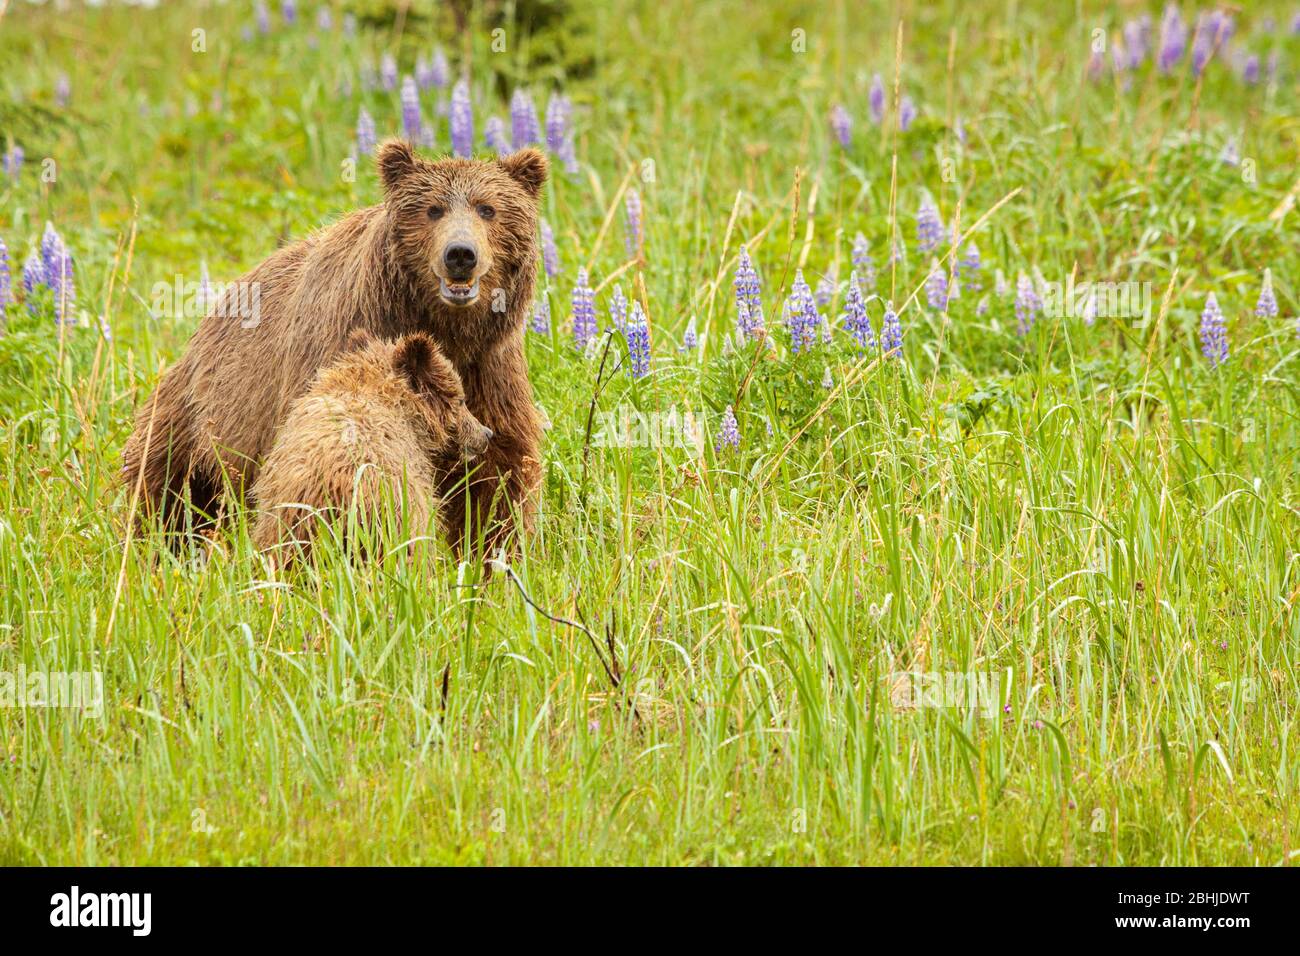 Familie (Mutter mit jungen) von grizzly Bären - Ursus Arctos - Lake-Clark-Nationalpark, Alaska, Vereinigte Staaten von Amerika Stockfoto